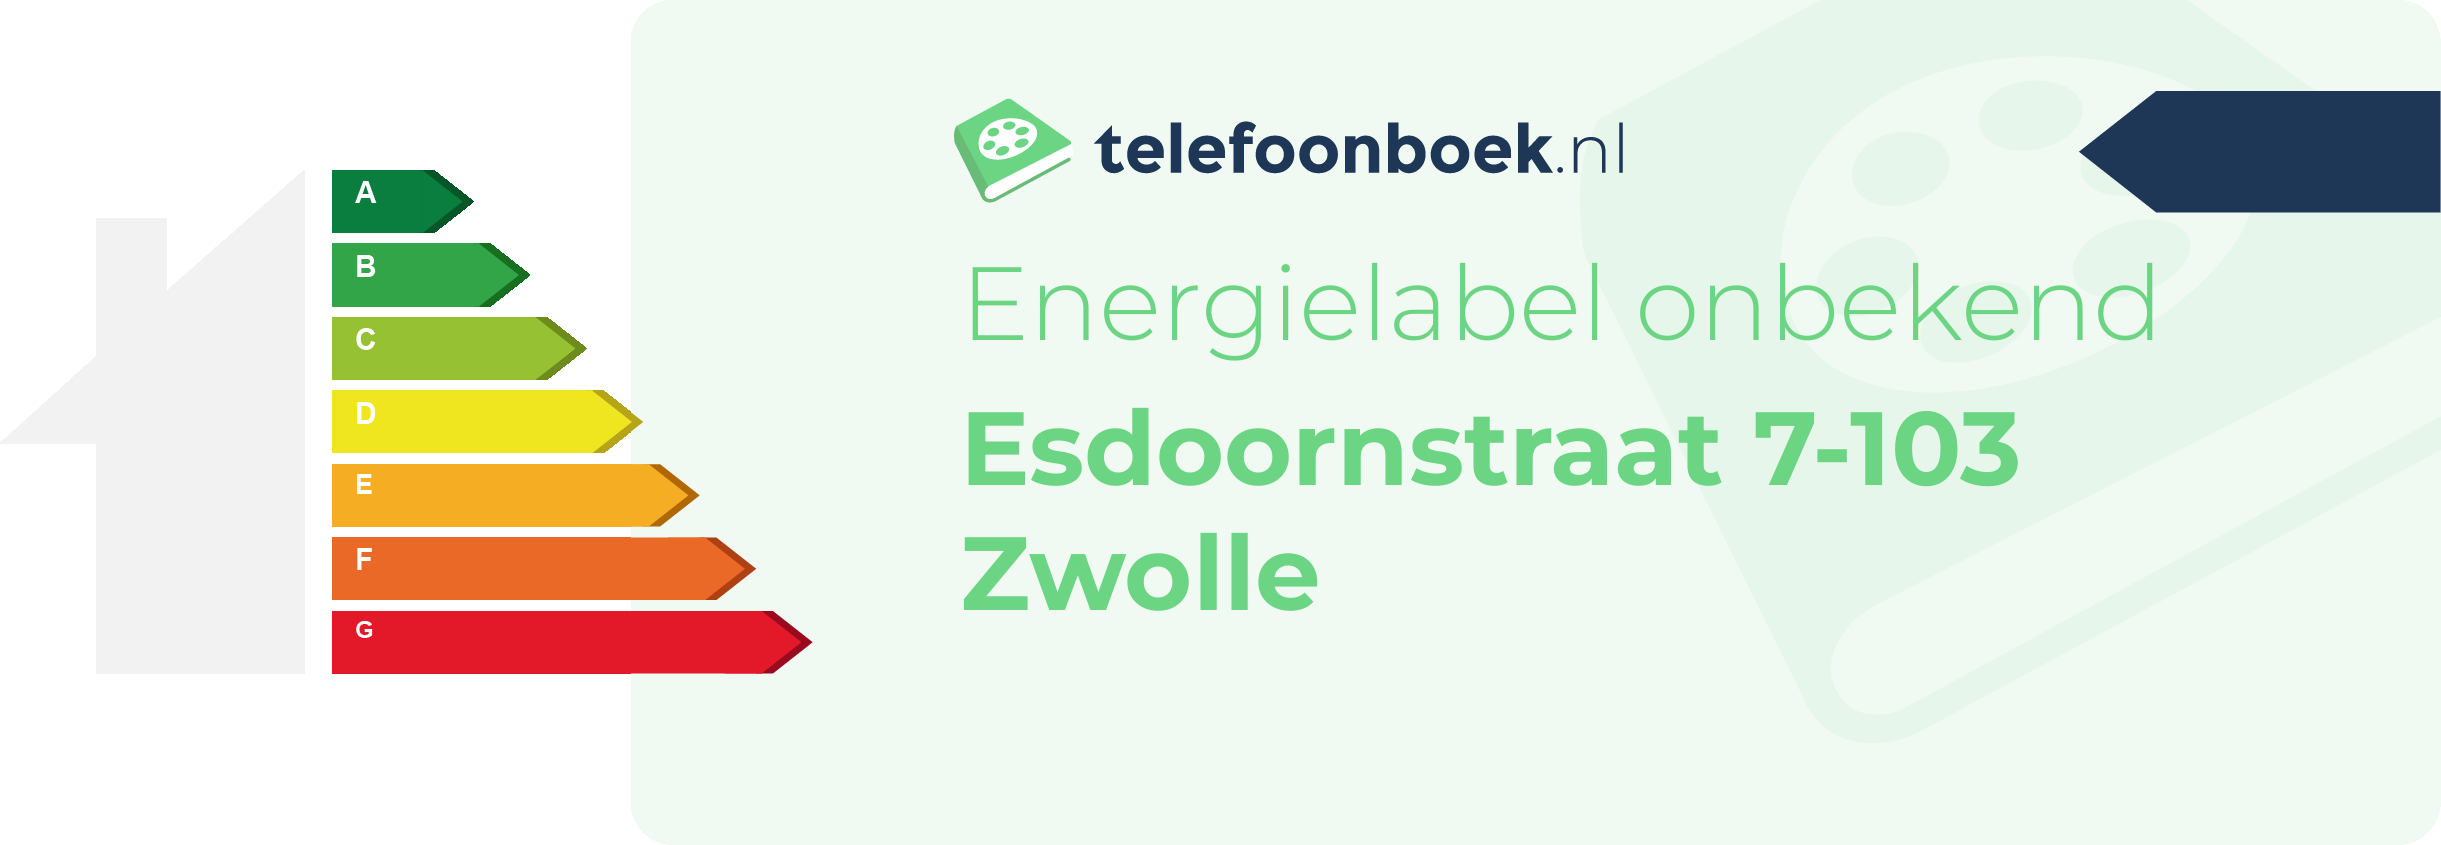 Energielabel Esdoornstraat 7-103 Zwolle